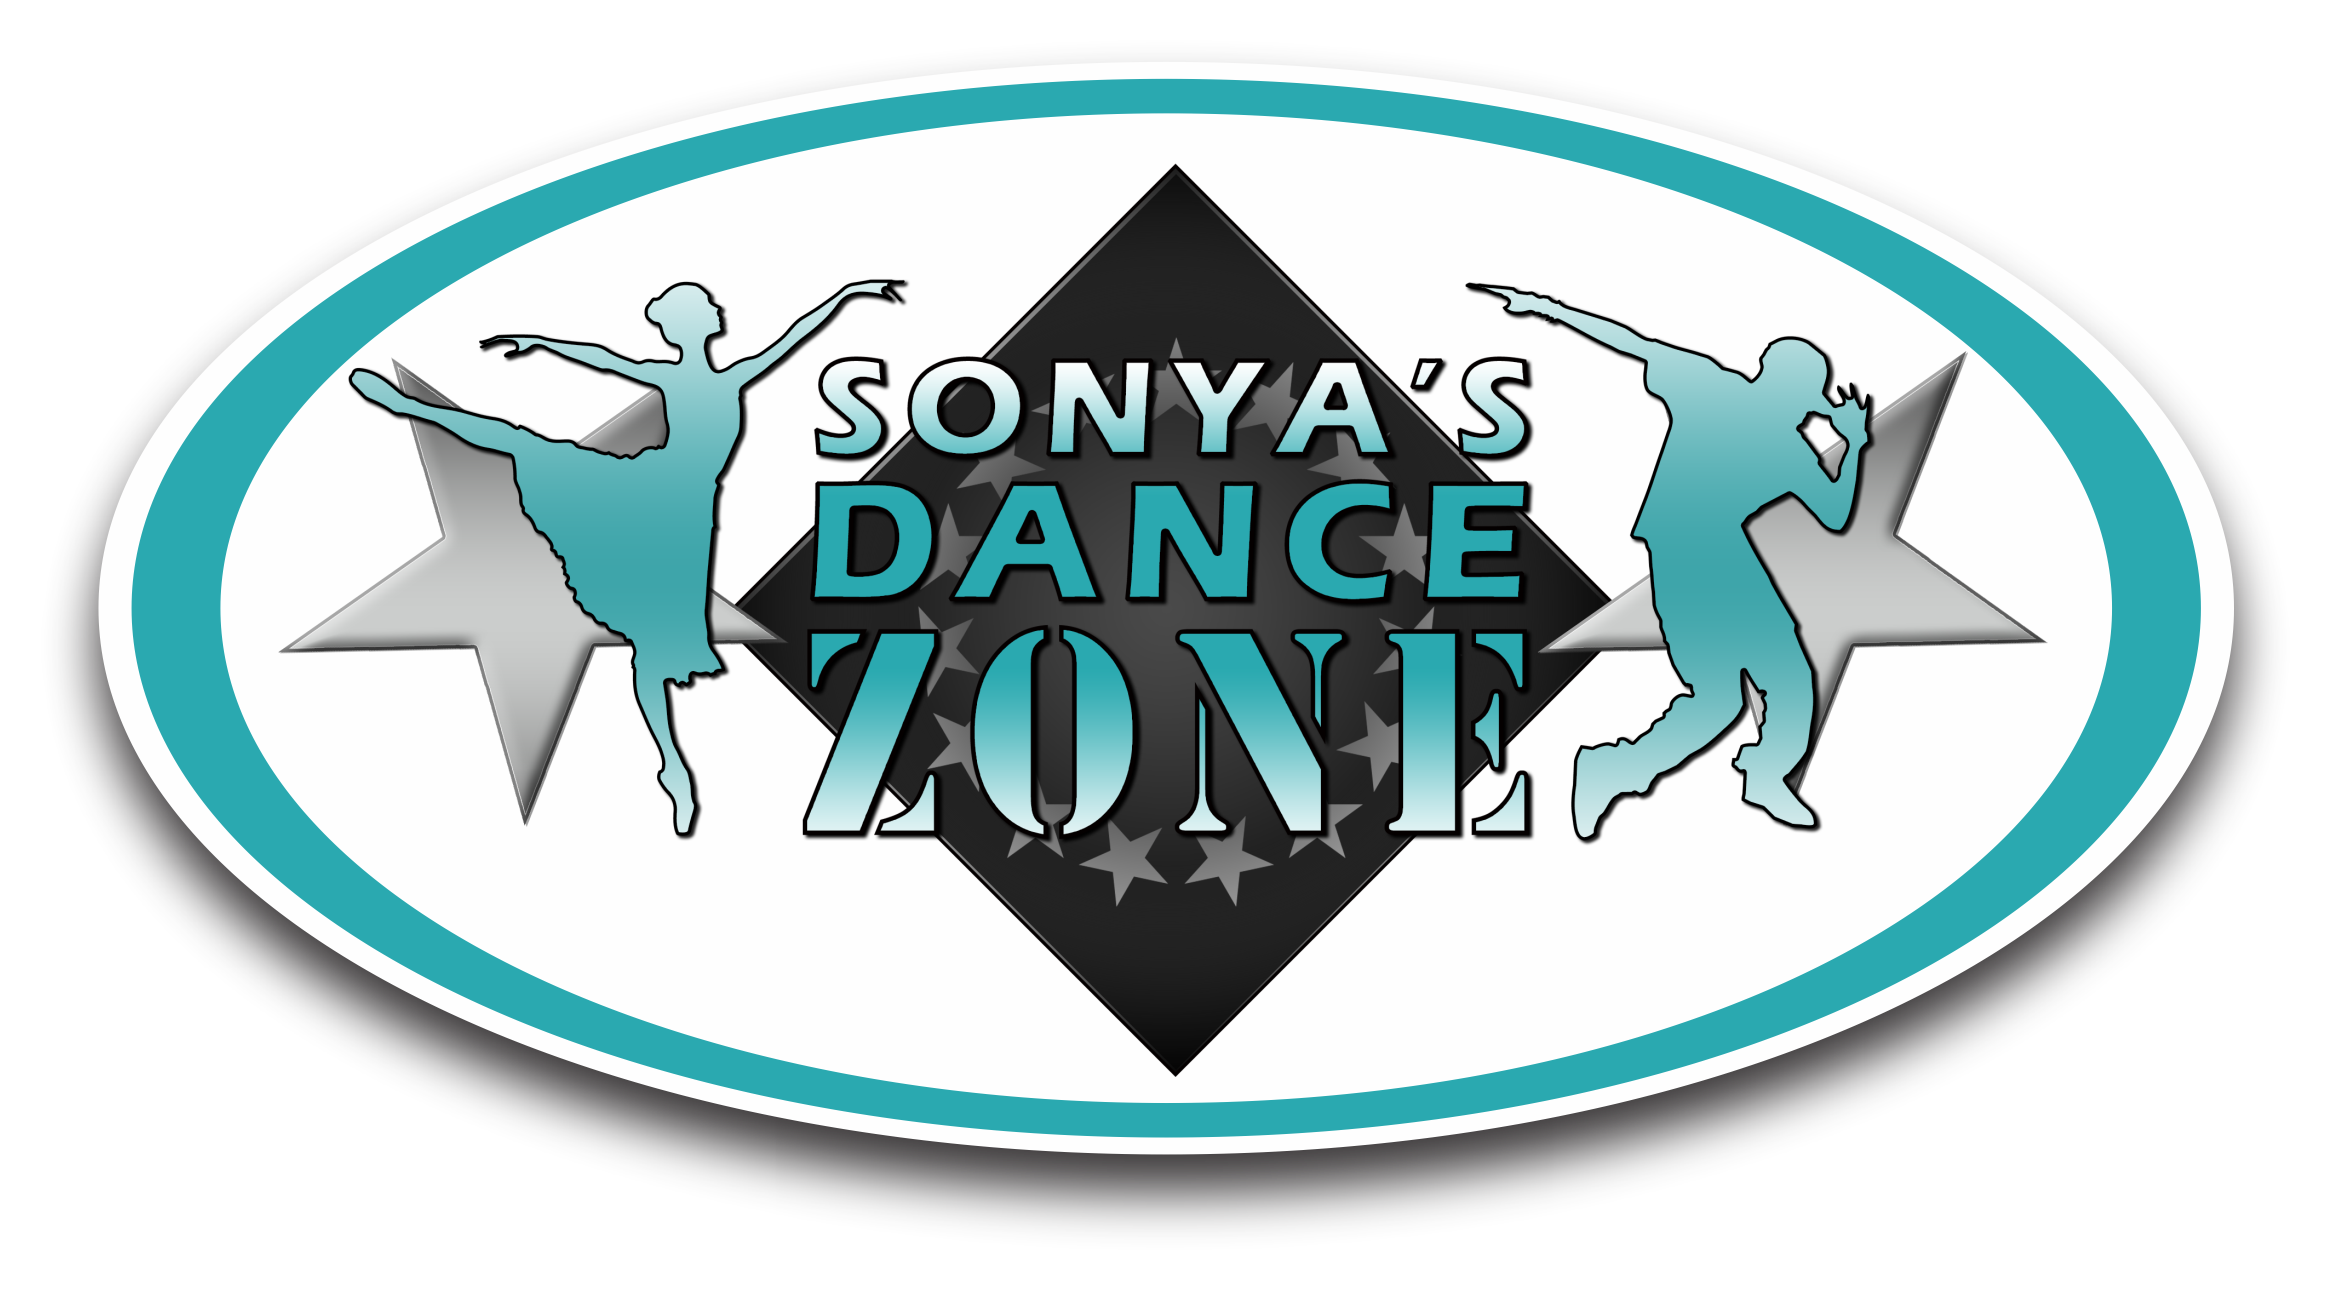 Sonya's Danze Zone